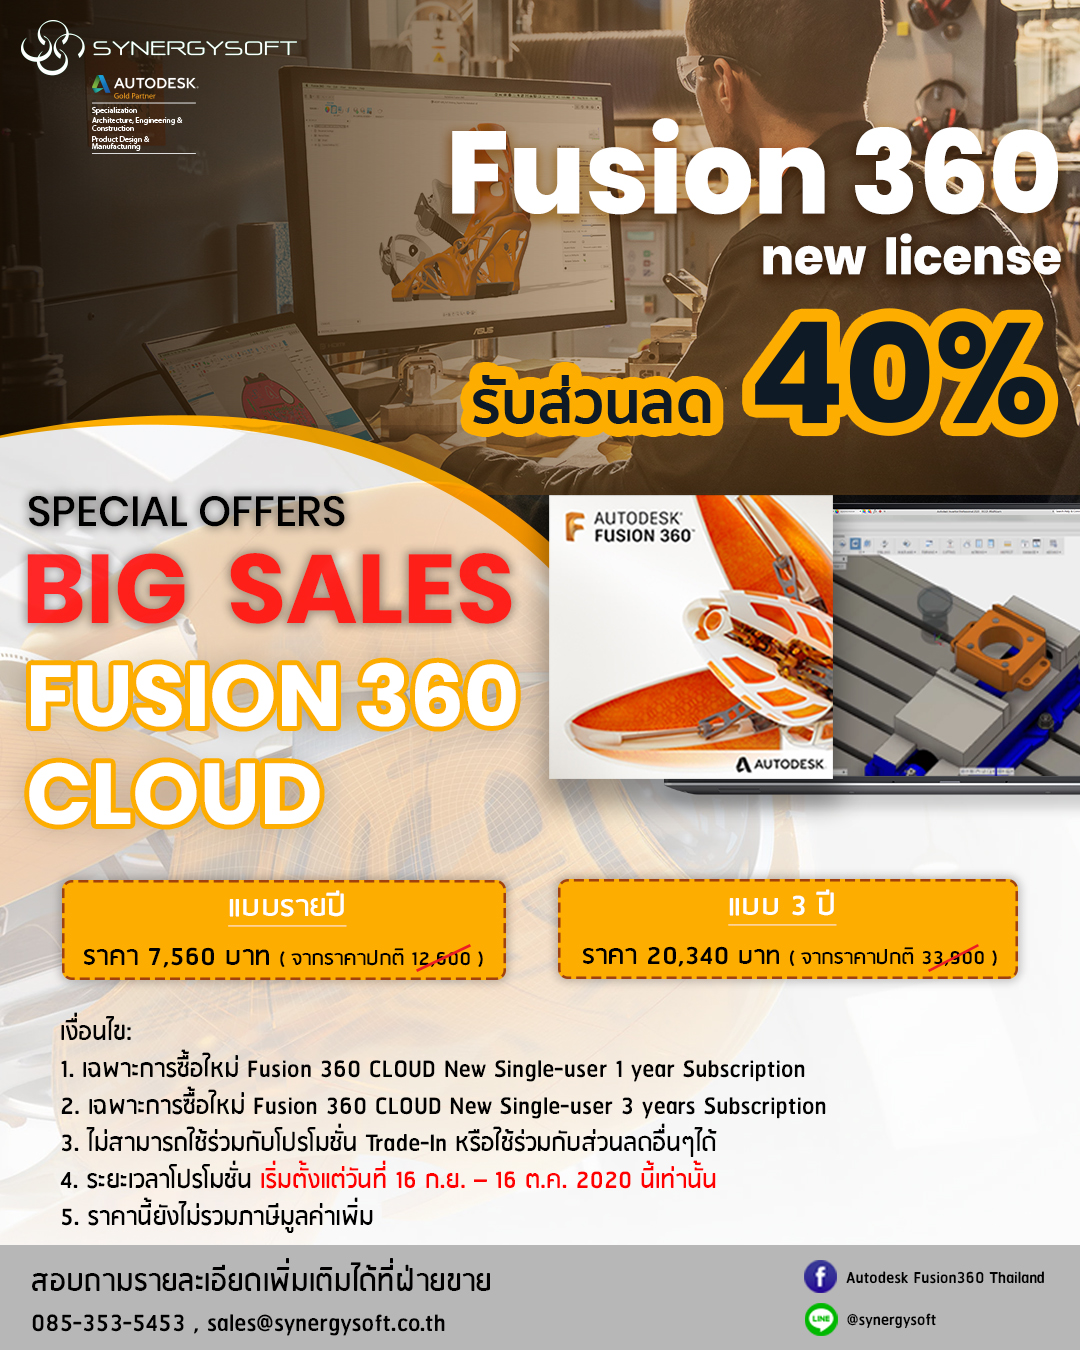 fusion 360 license price